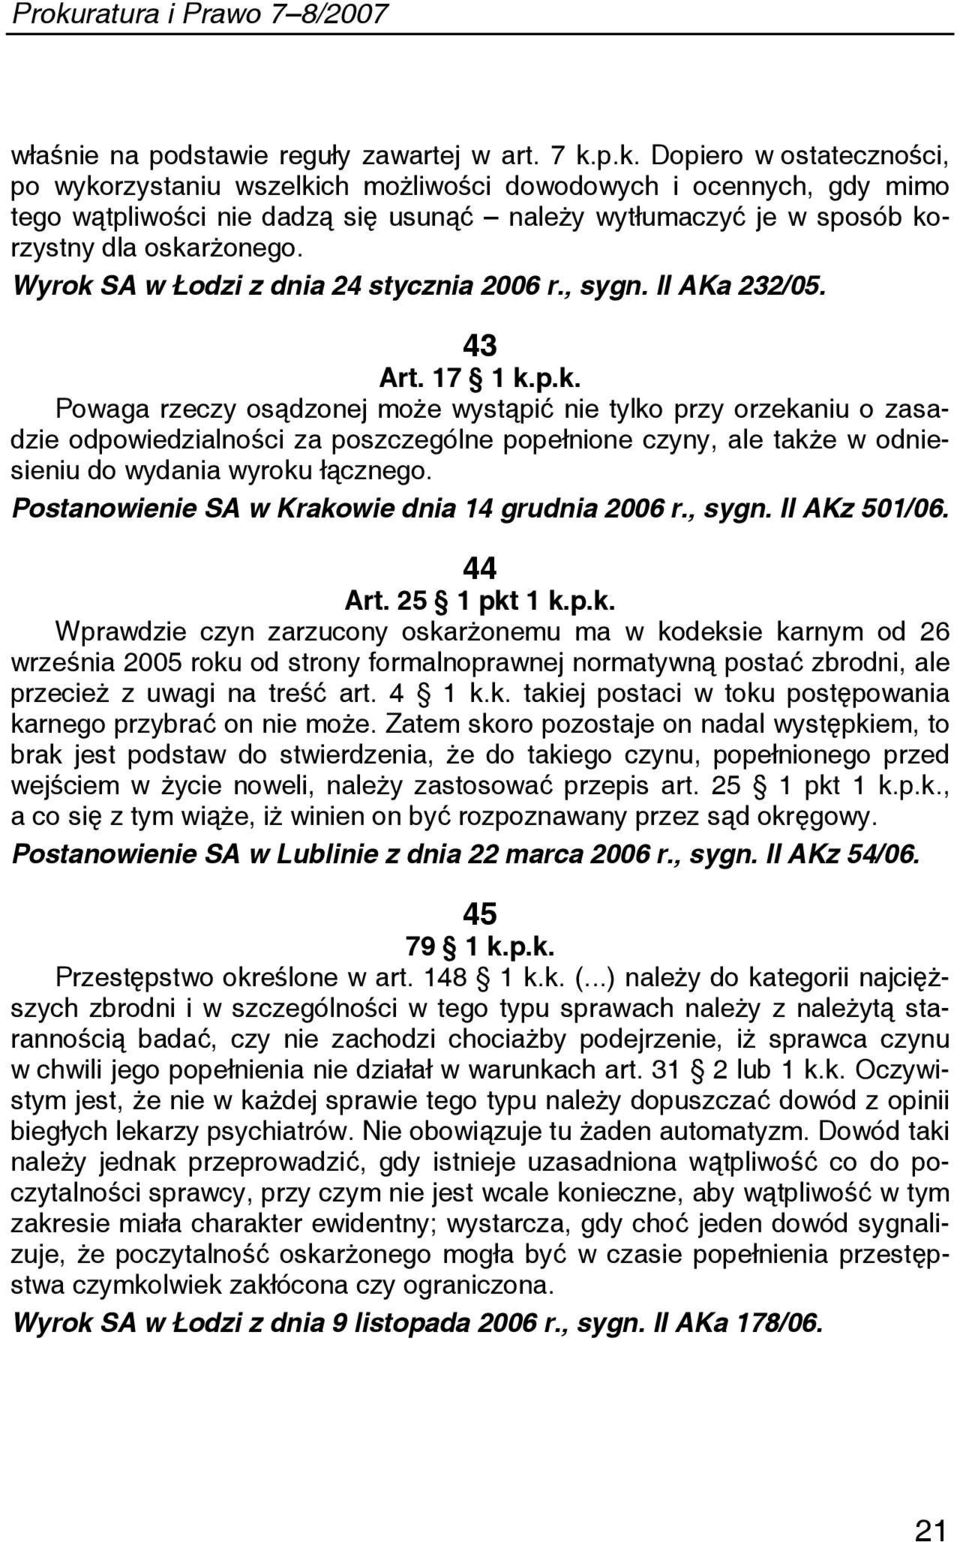 Wyrok SA w Łodzi z dnia 24 stycznia 2006 r., sygn. II AKa 232/05. 43 Art. 17 1 k.p.k. Powaga rzeczy osądzonej może wystąpić nie tylko przy orzekaniu o zasadzie odpowiedzialności za poszczególne popełnione czyny, ale także w odniesieniu do wydania wyroku łącznego.